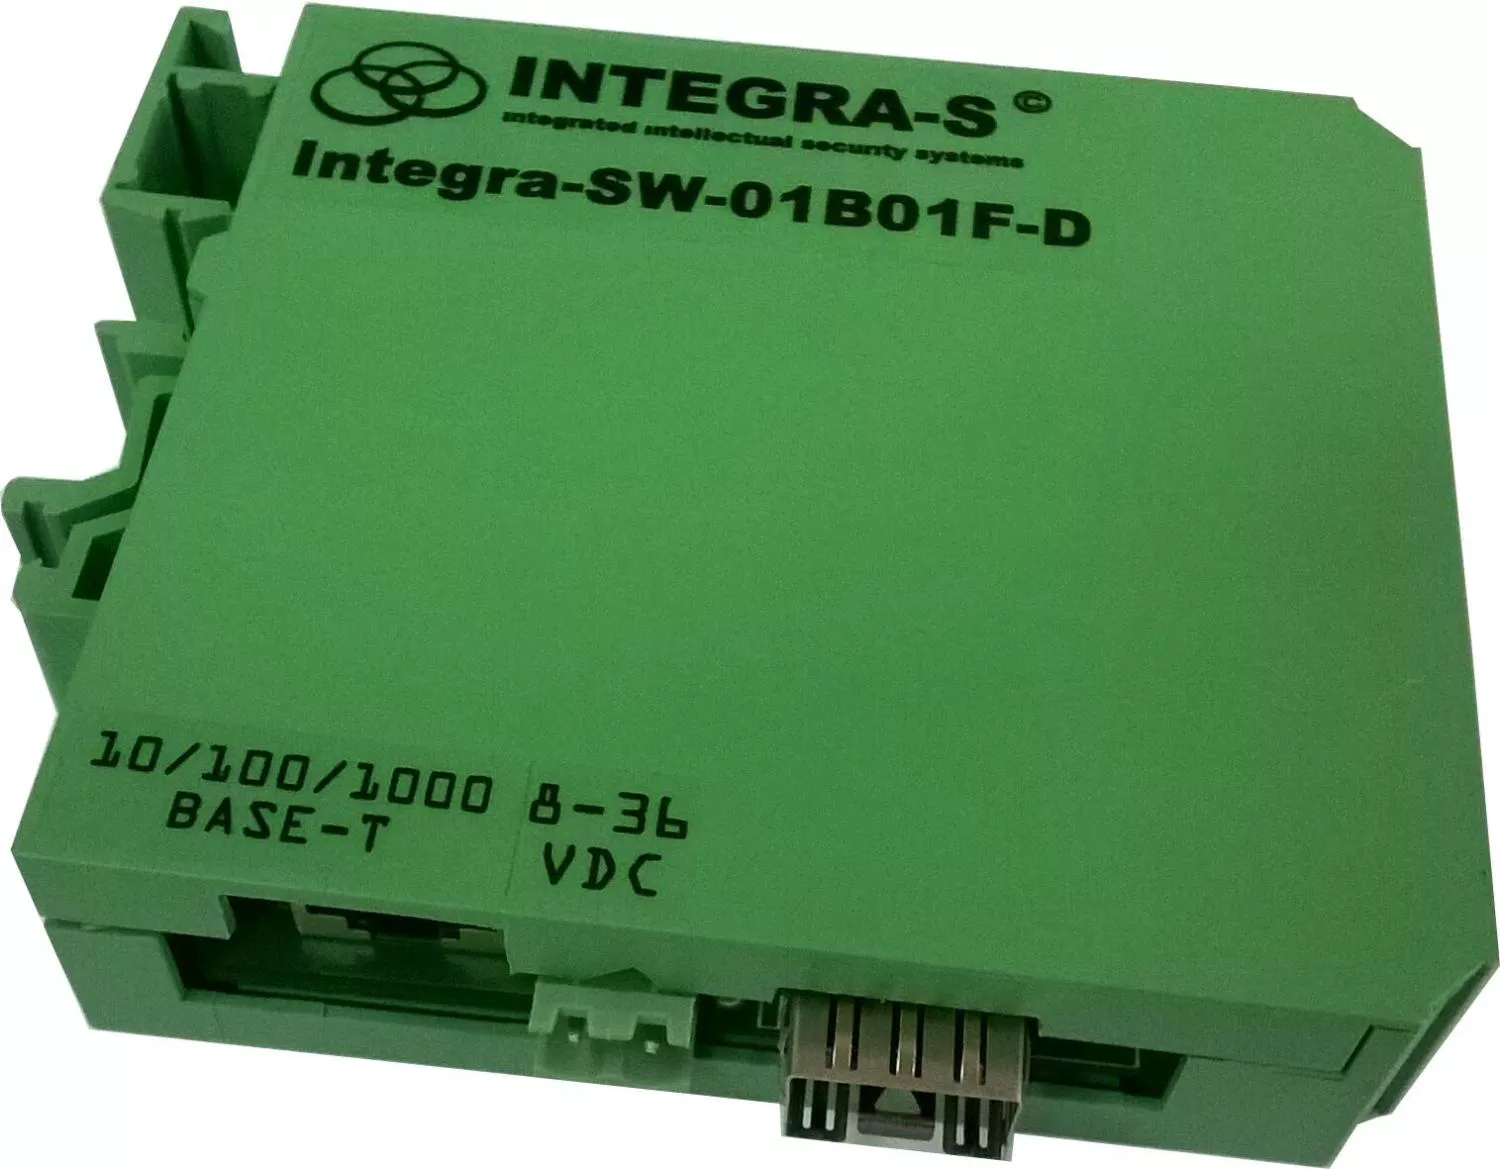 Гигабитный медиаконвертер Консорциум “Интегра-С” Integra-SW-01B01F-D